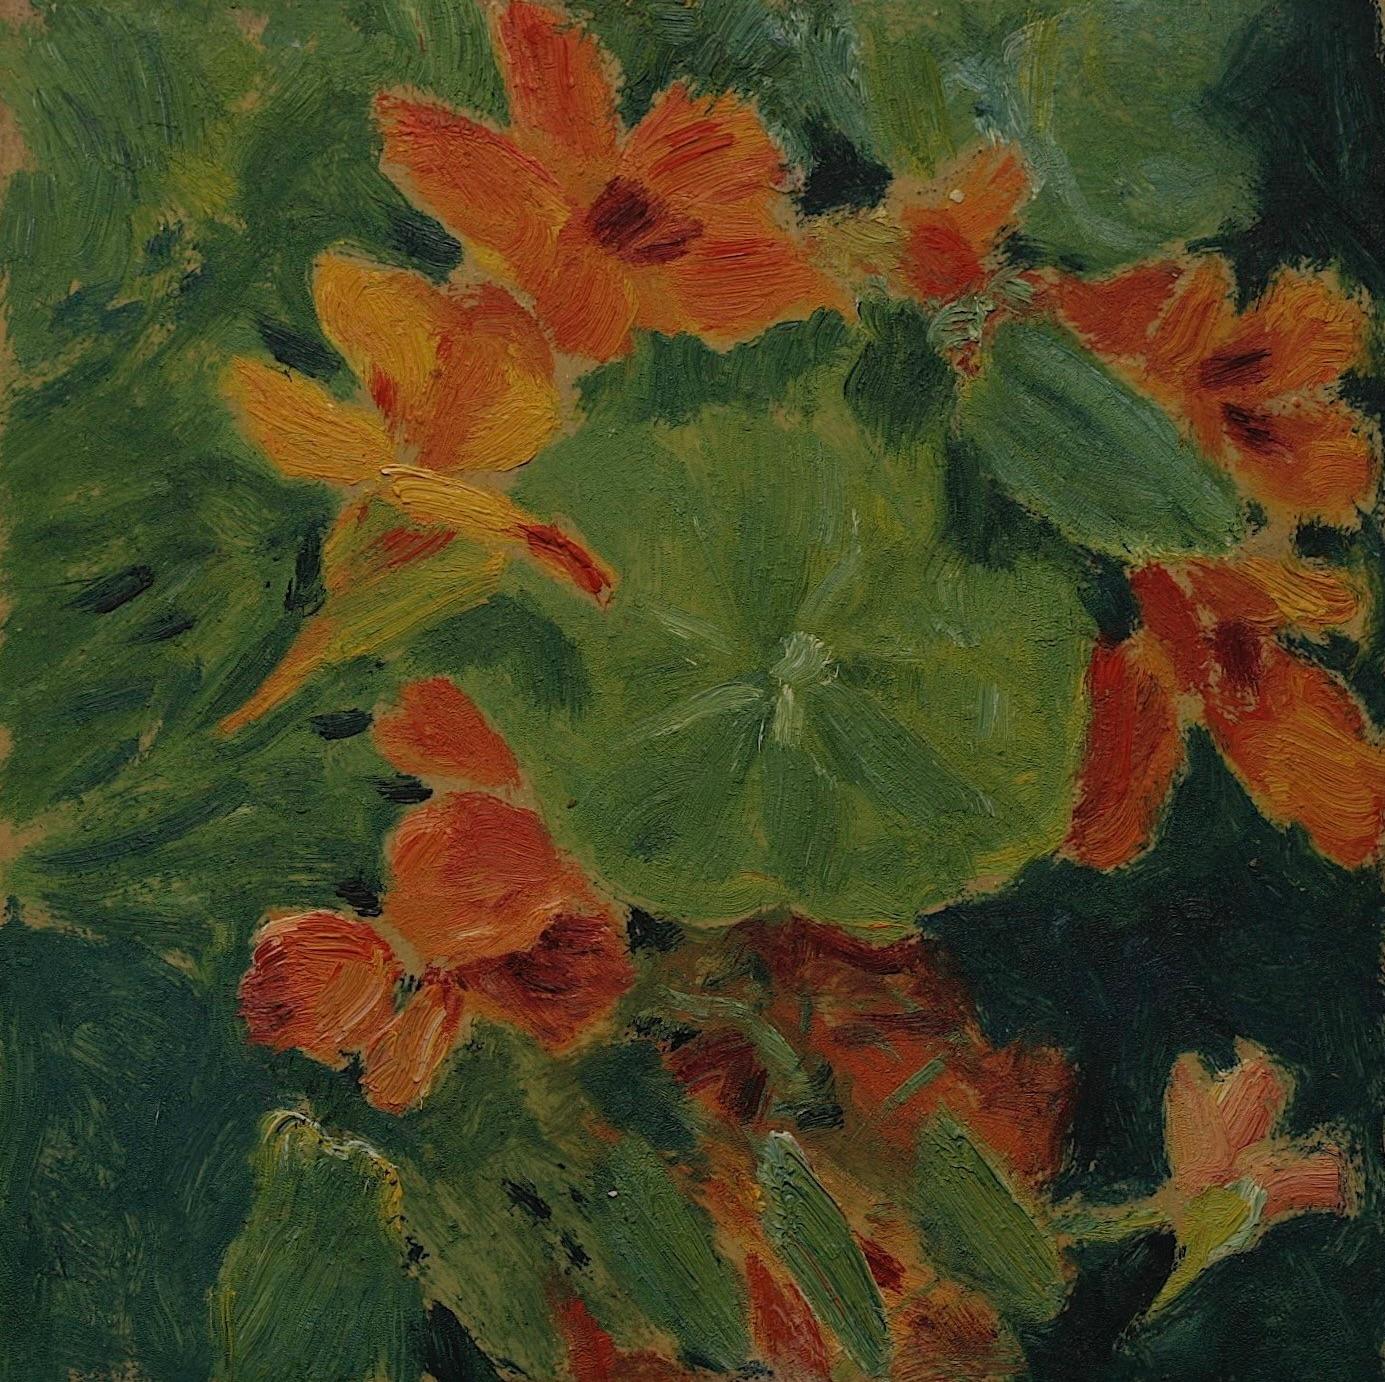 Capucine Fleurs rouges orange vertes 1920 Santa Barbara, Californie  huile sur carton